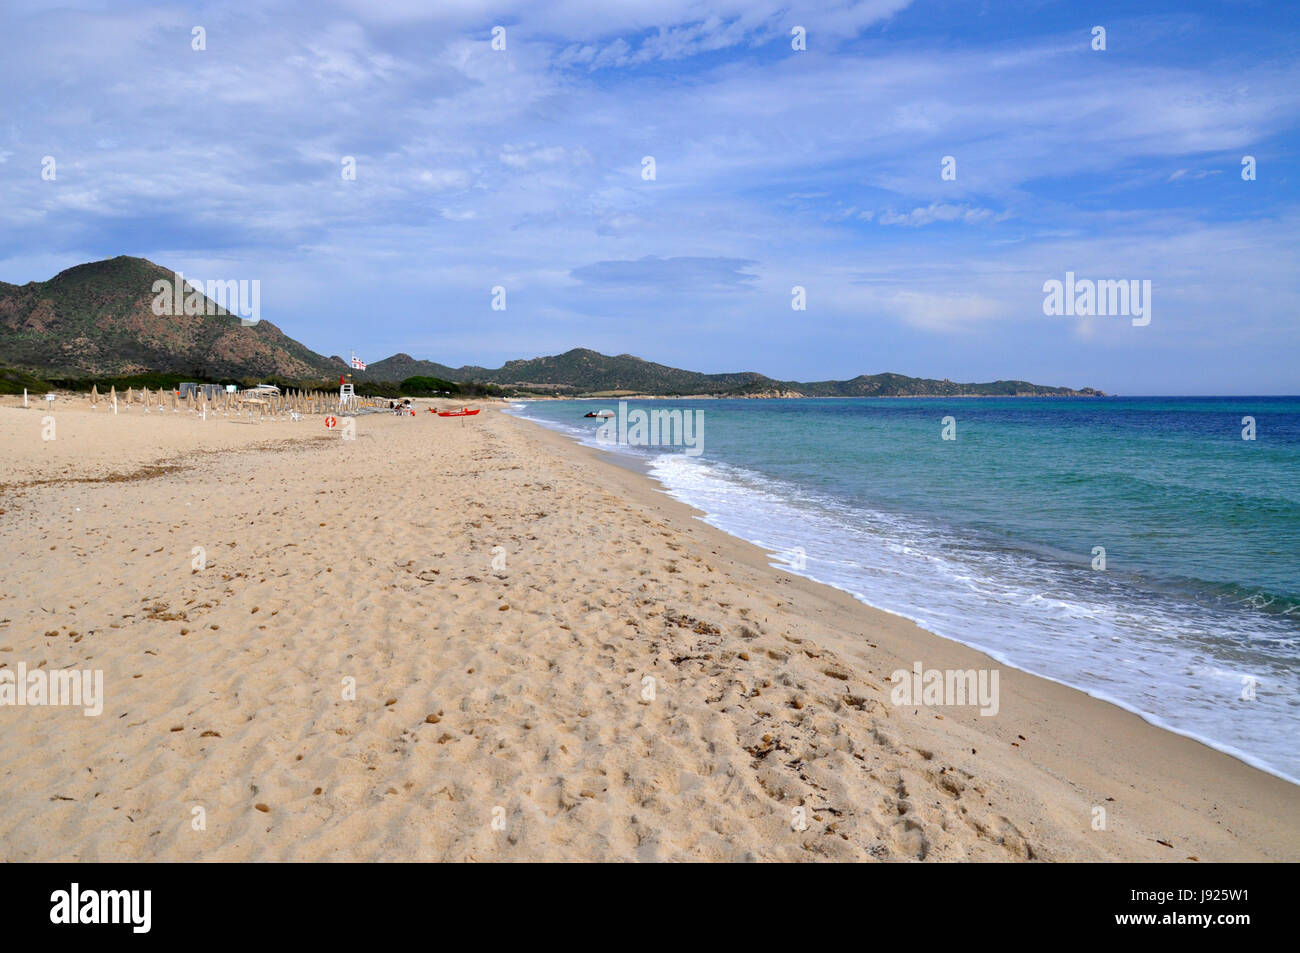 Spiaggia di Costa Rei vista sull'isola di Sardegna in Italia Foto Stock